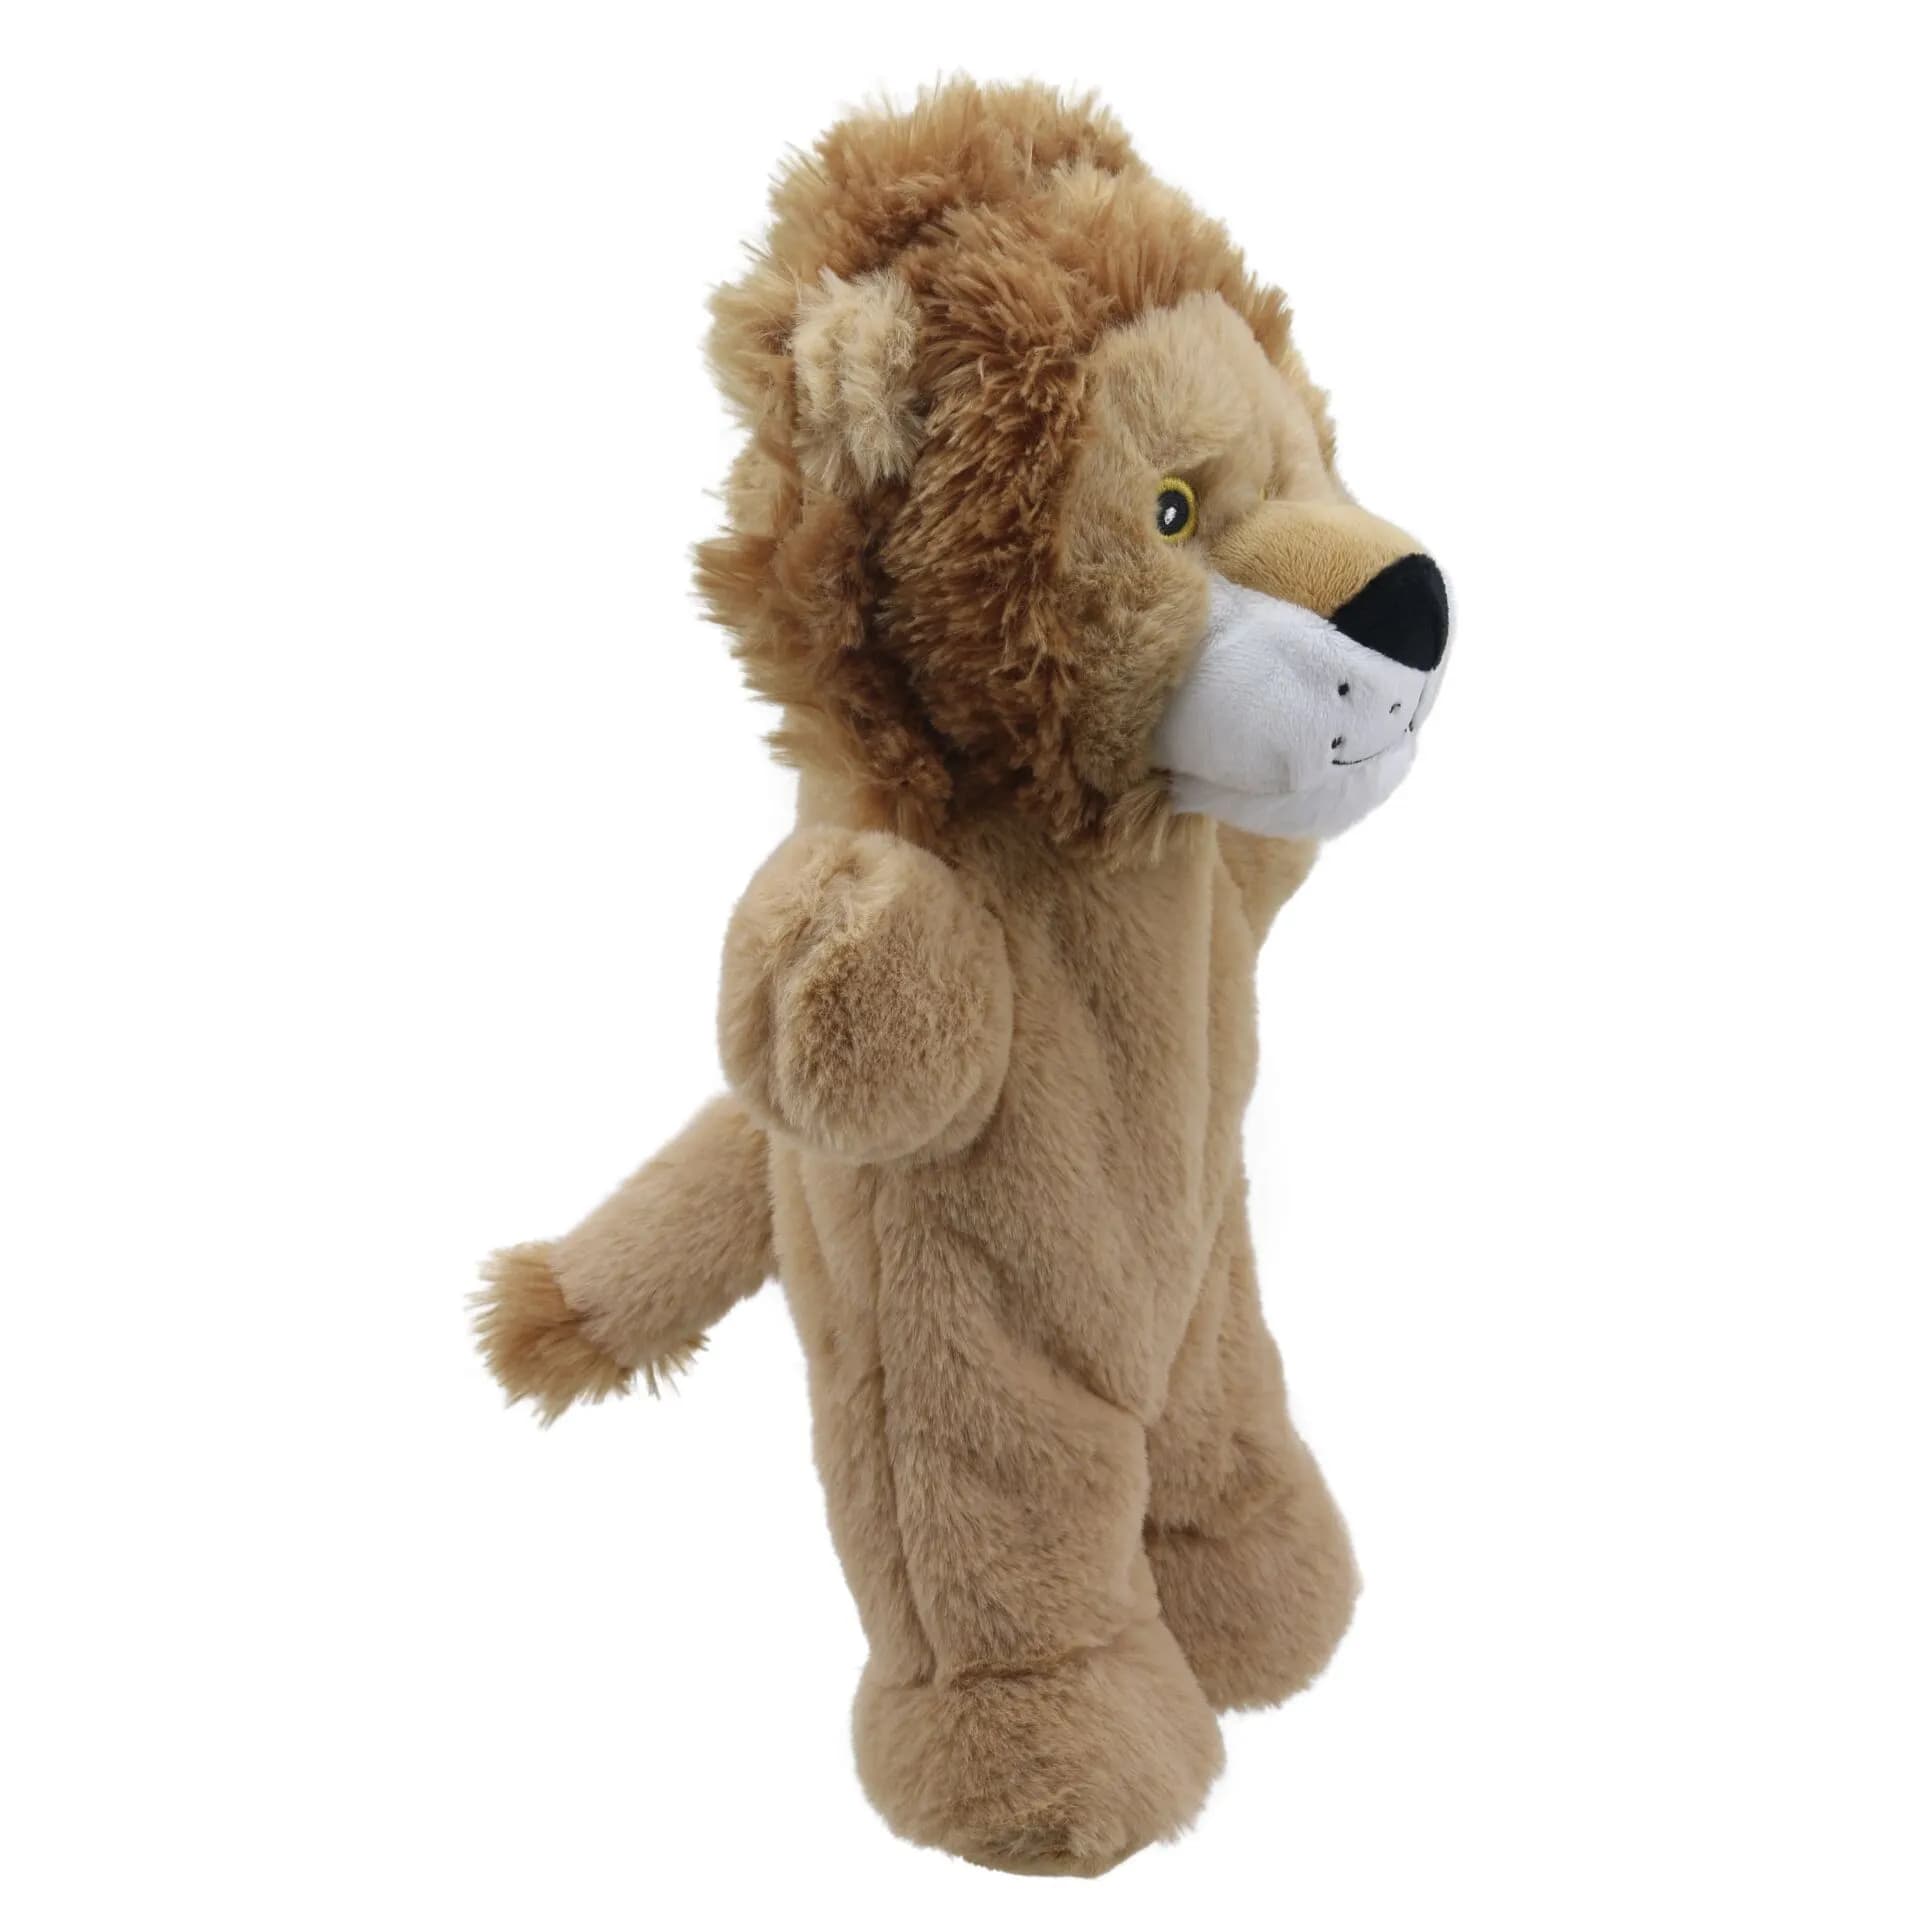 Eco Friendly Puppet - Lion